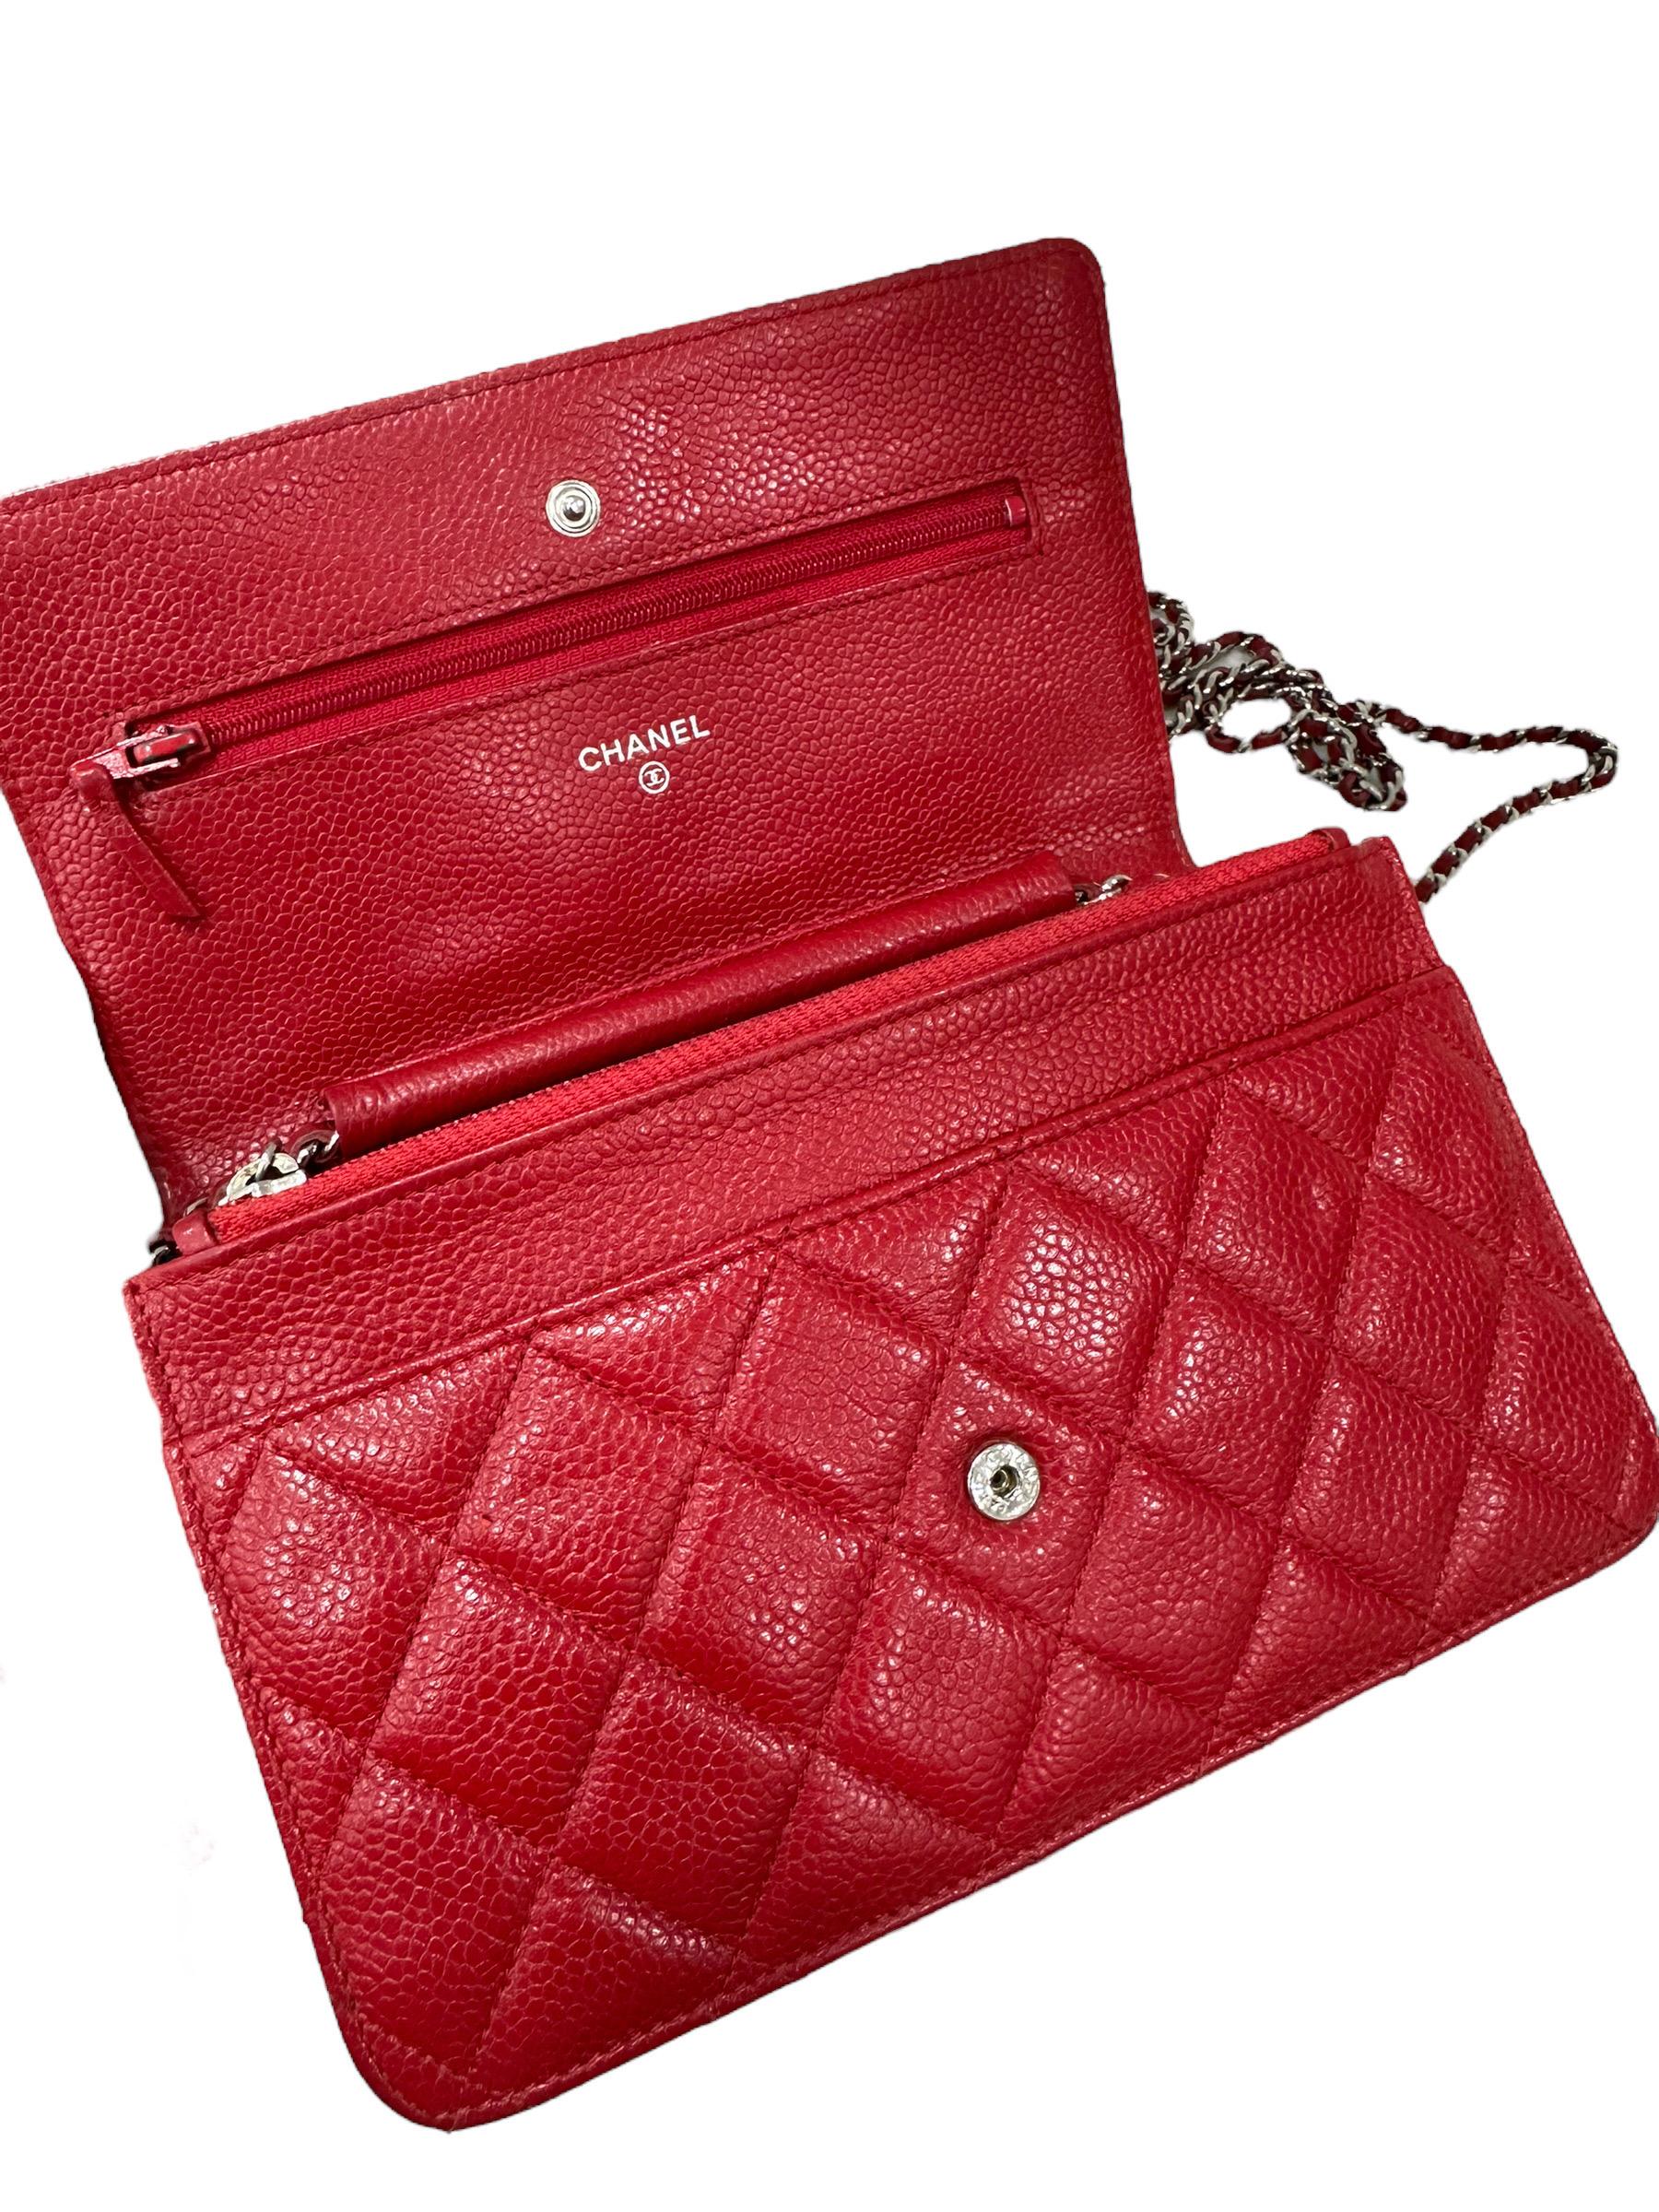 2013 Chanel Woc Caviar Red Crossbody Bag 6